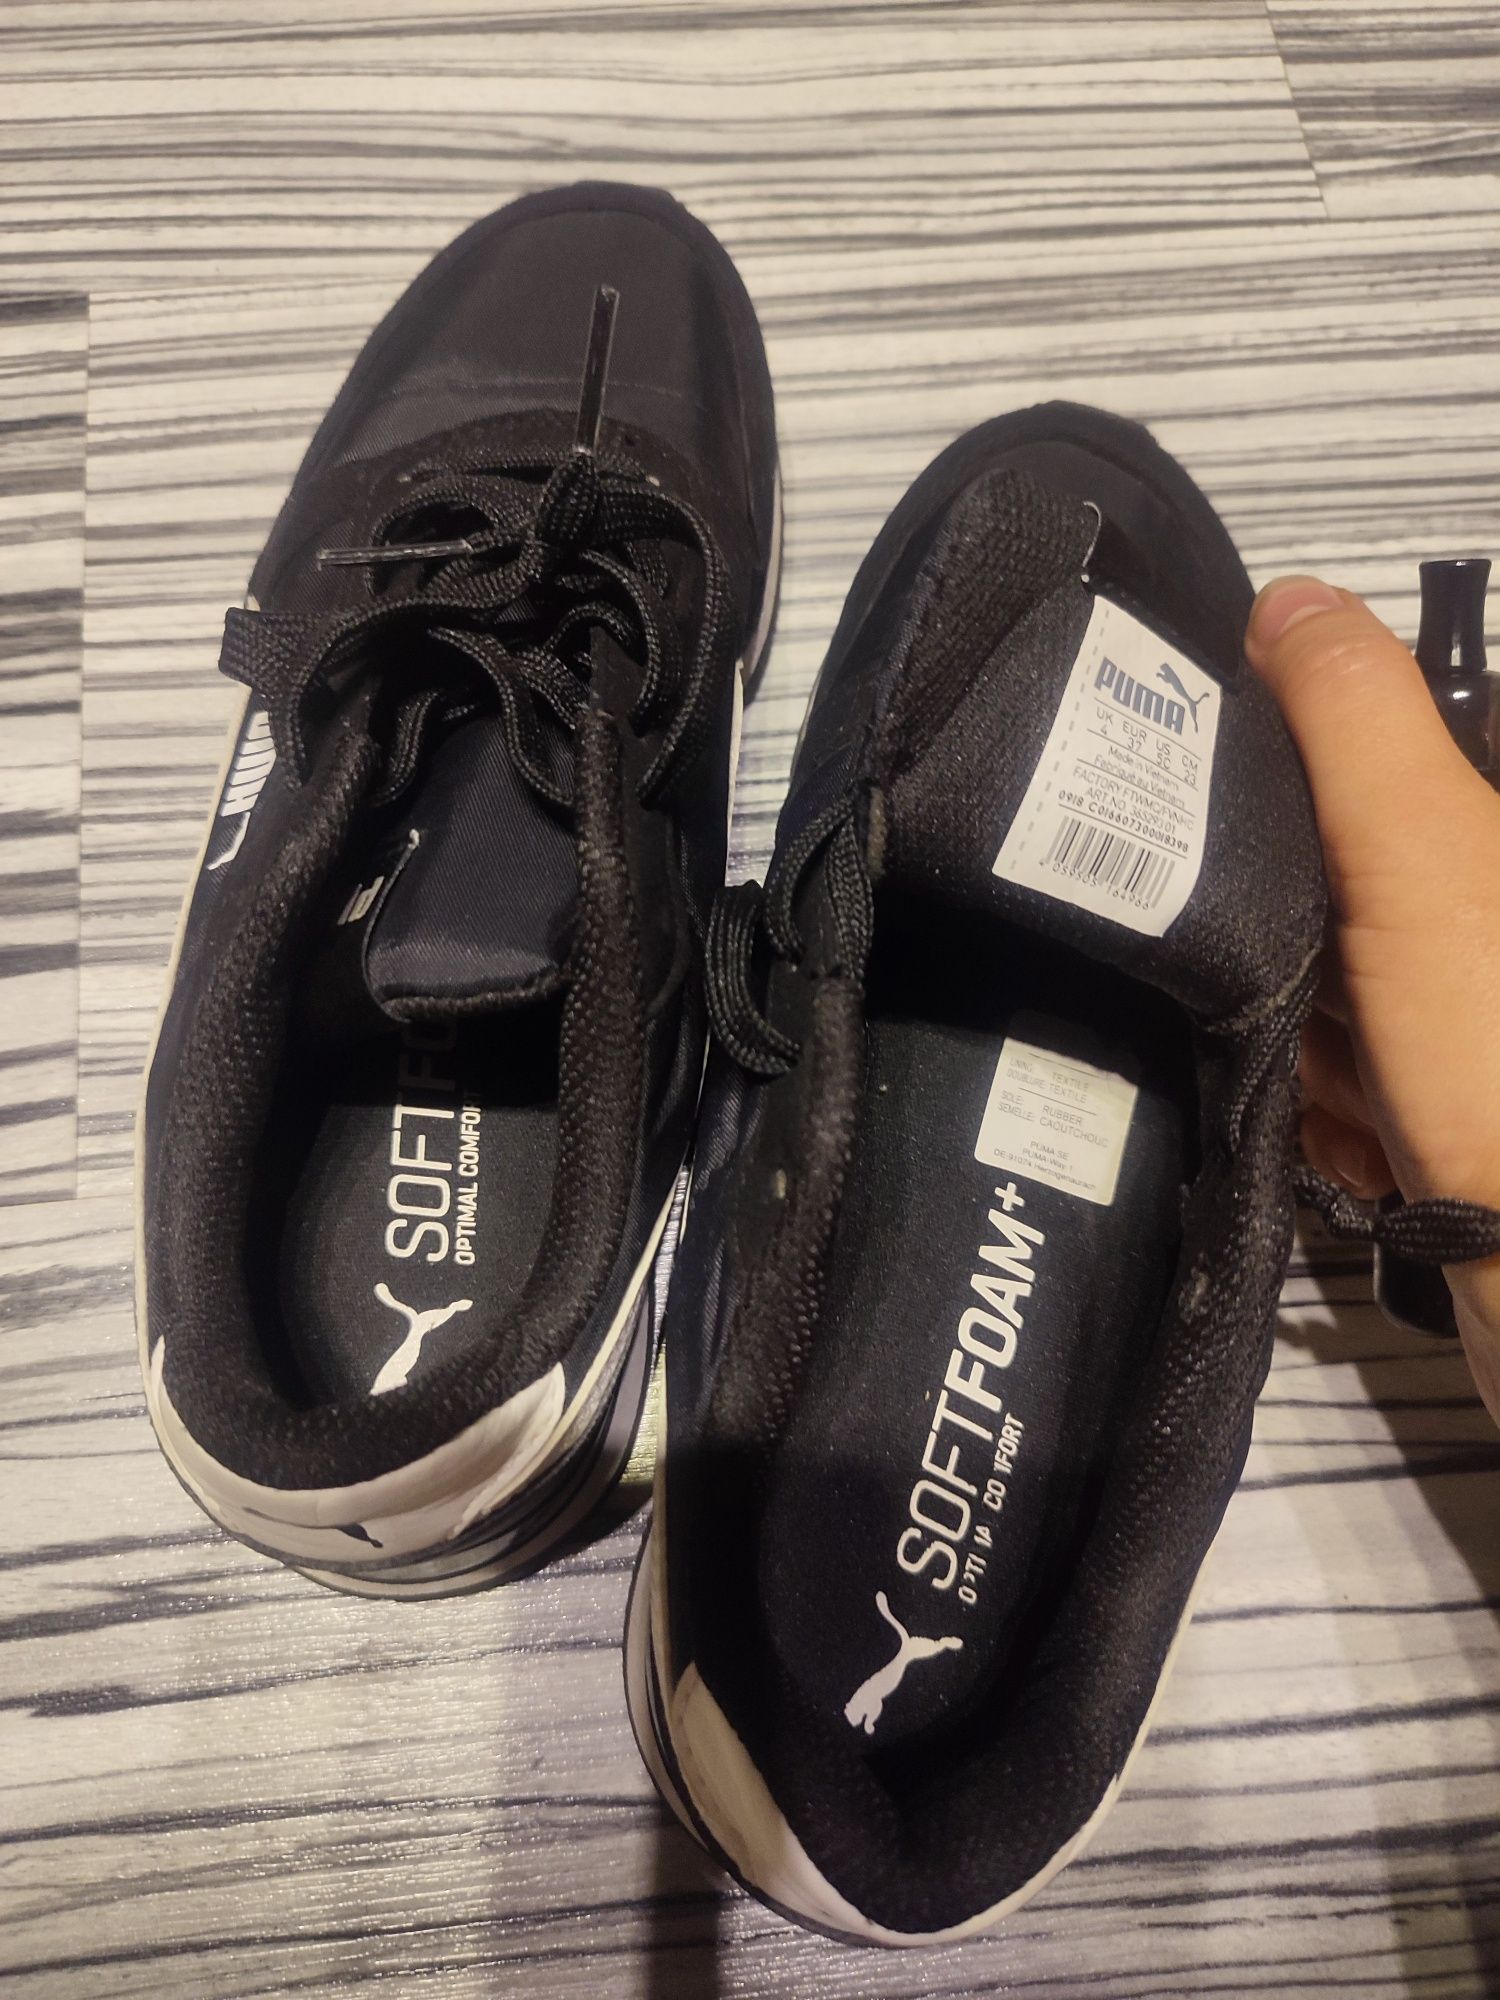 PUMA sneakersy black white 36 37 klasyczne czarnobiałe jak nowe unisex